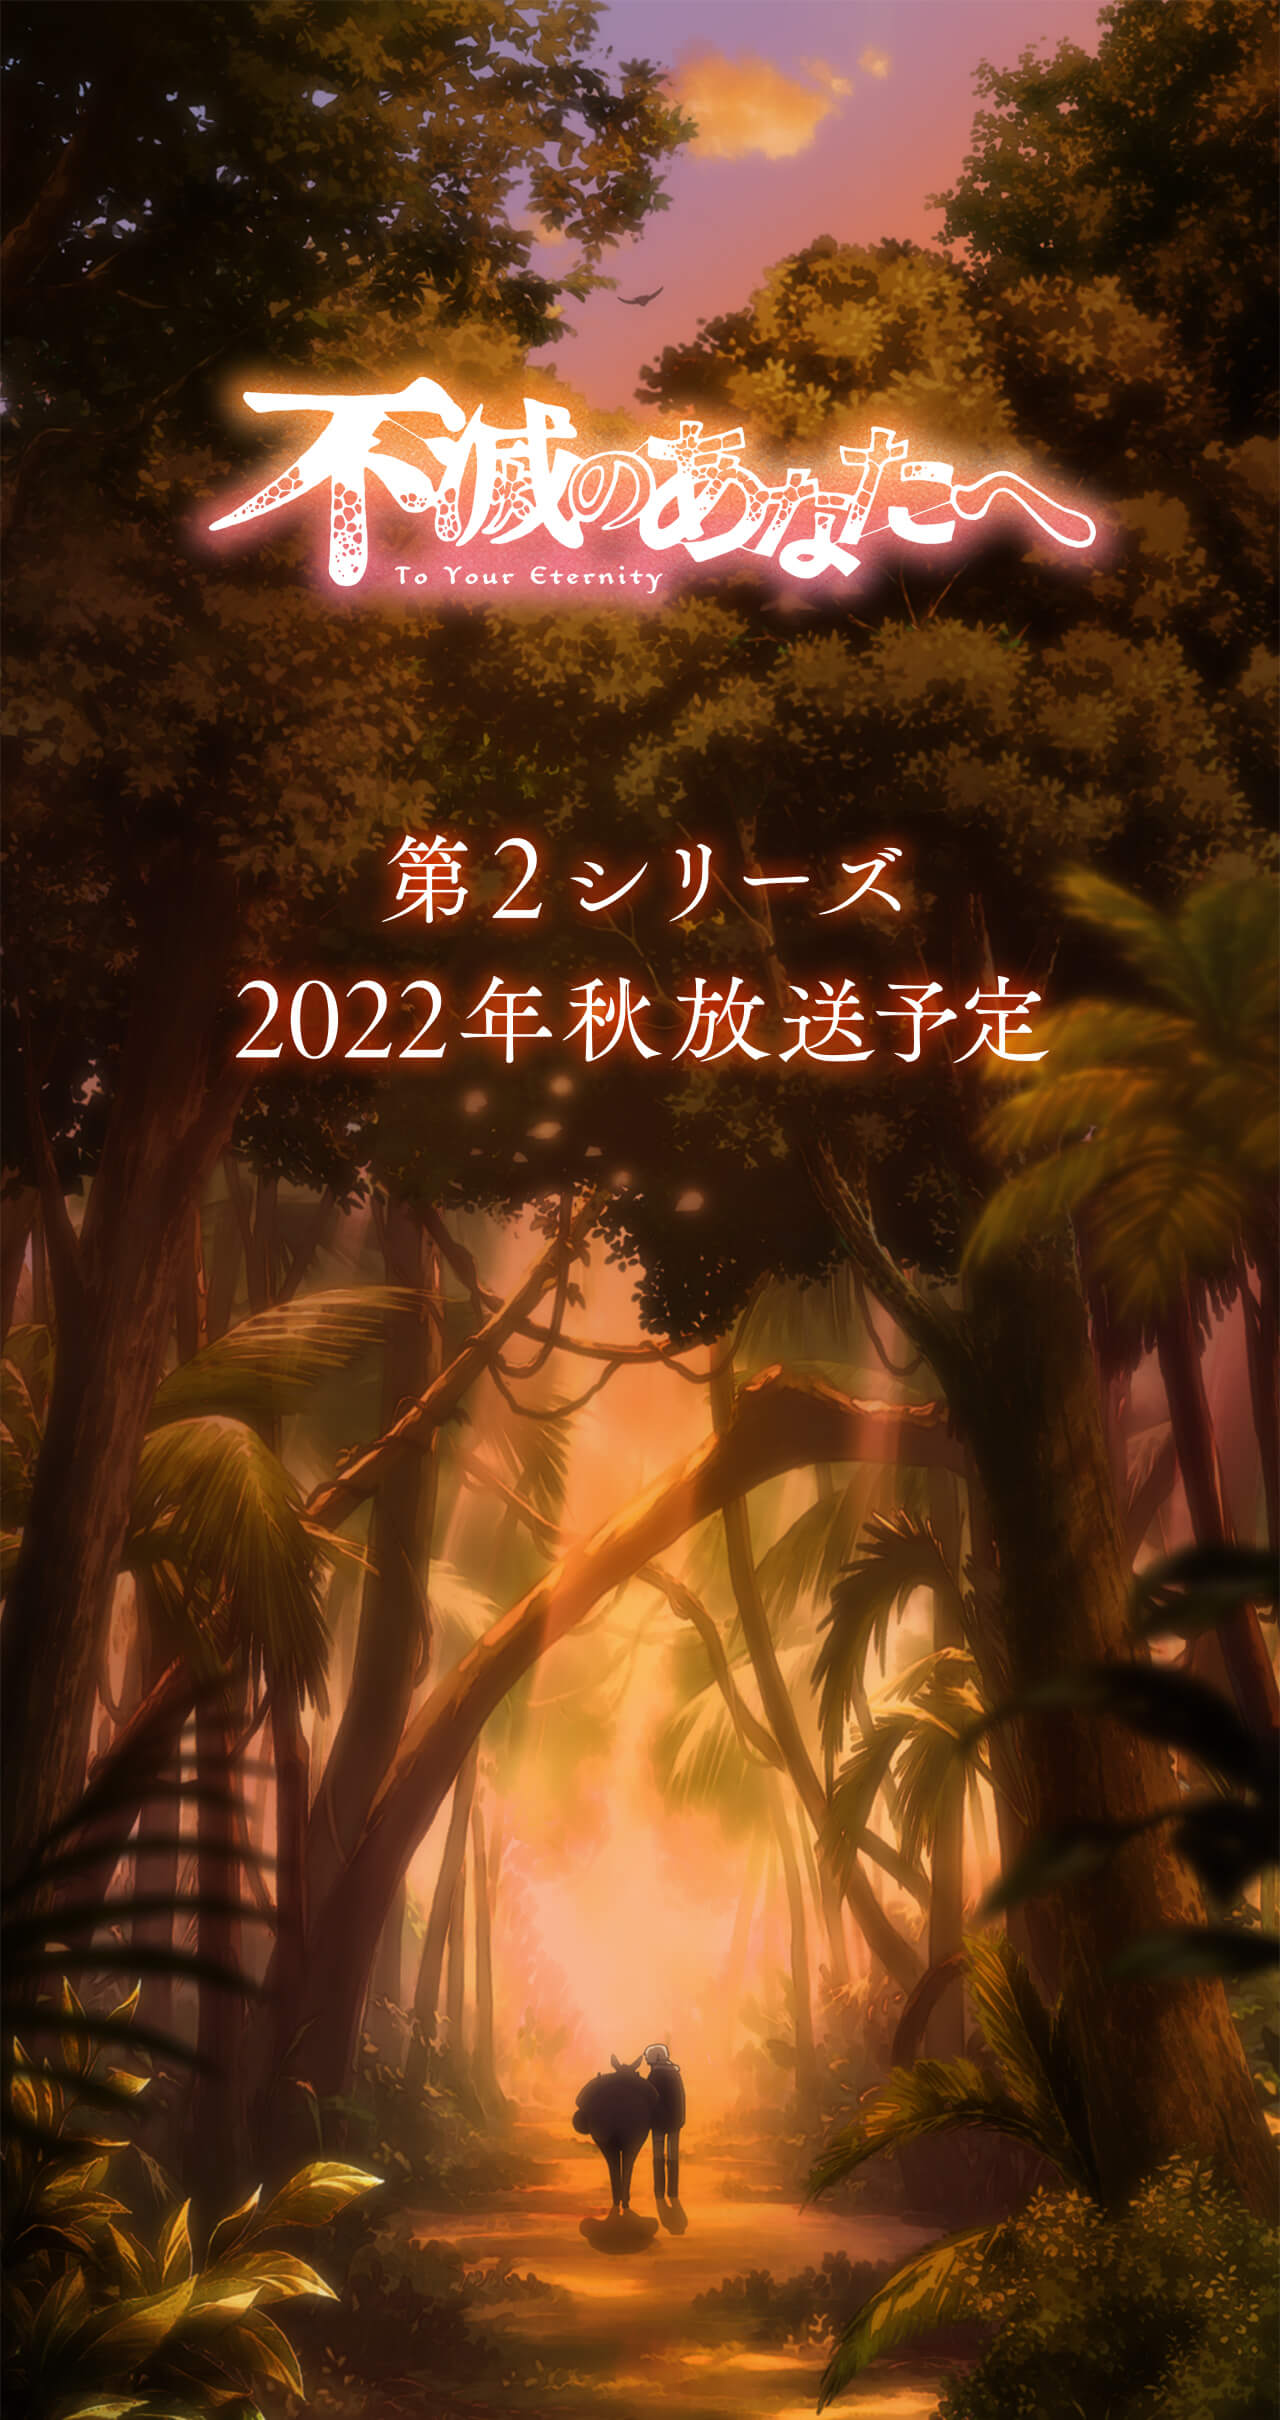 Anime To Your Eternity sẽ có Mùa 2 vào Mùa Thu 2022